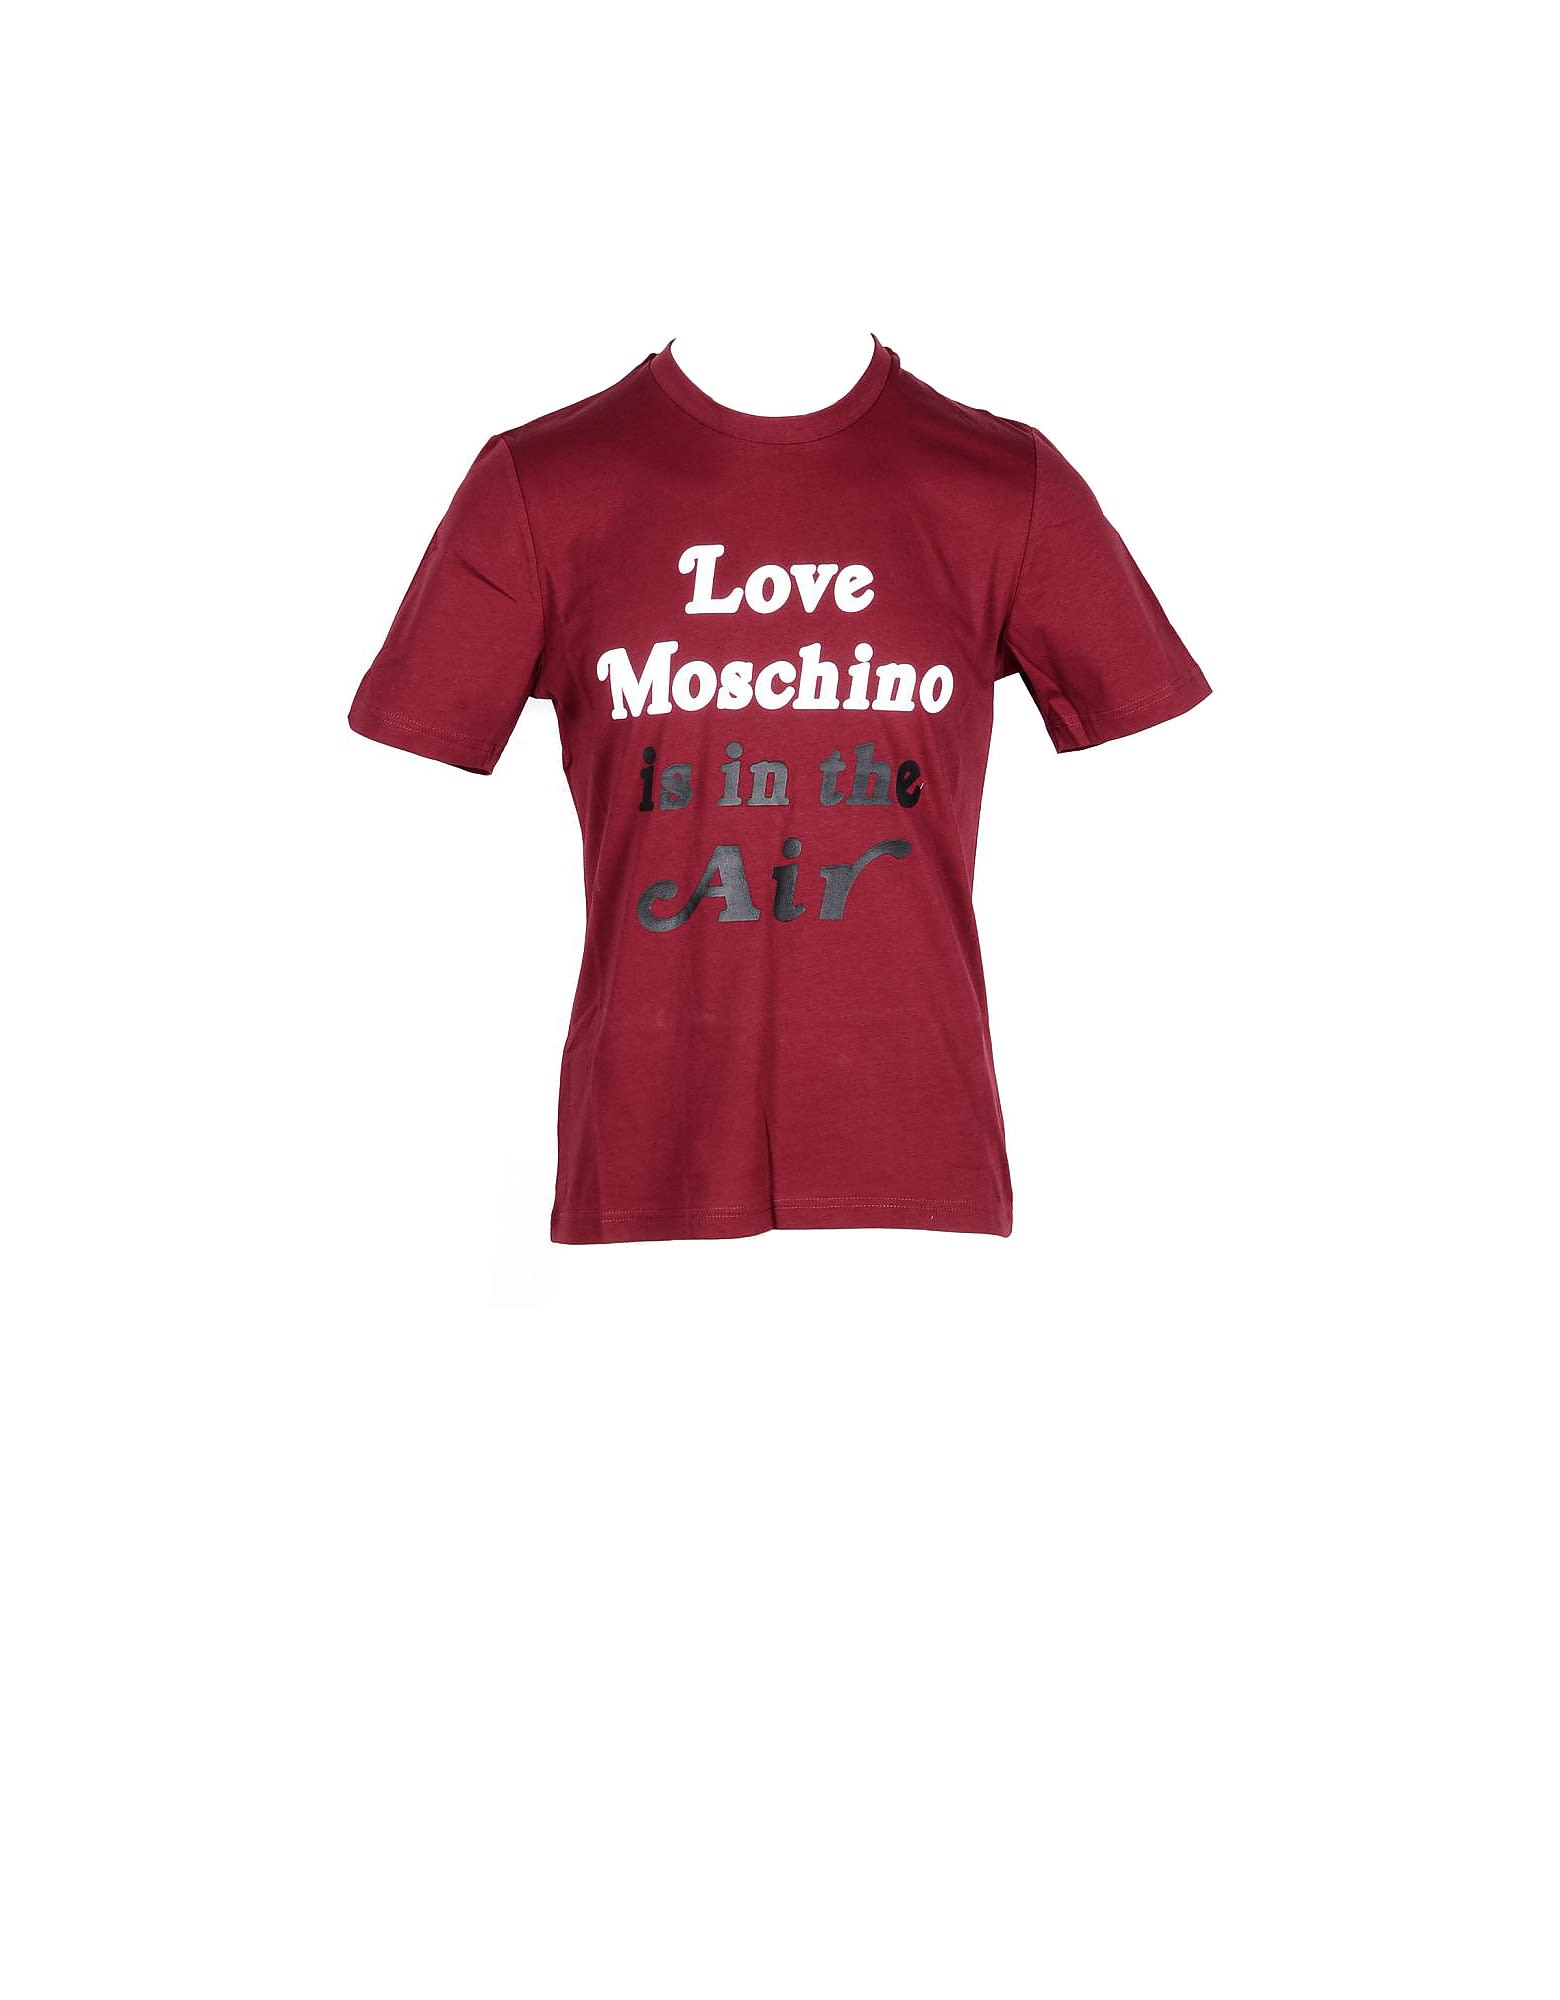 Love Moschino Mens Red T-shirt